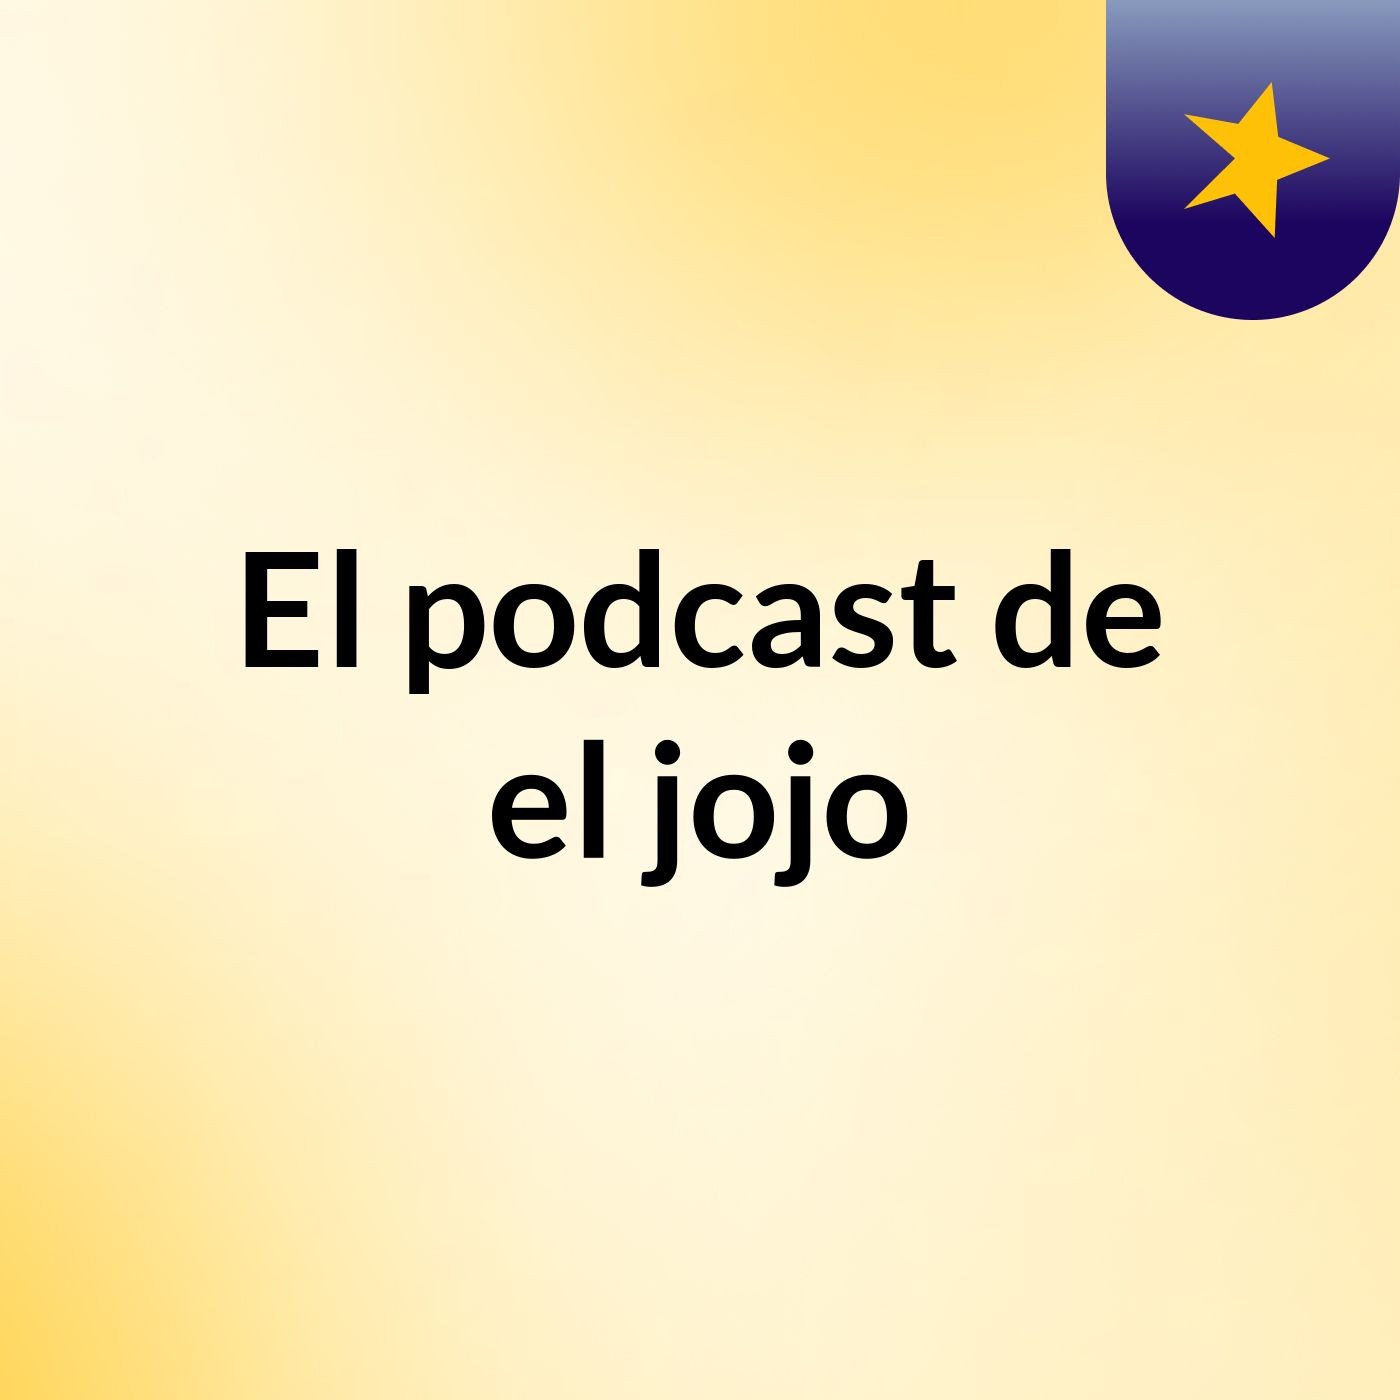 Informativo - El podcast de Jose